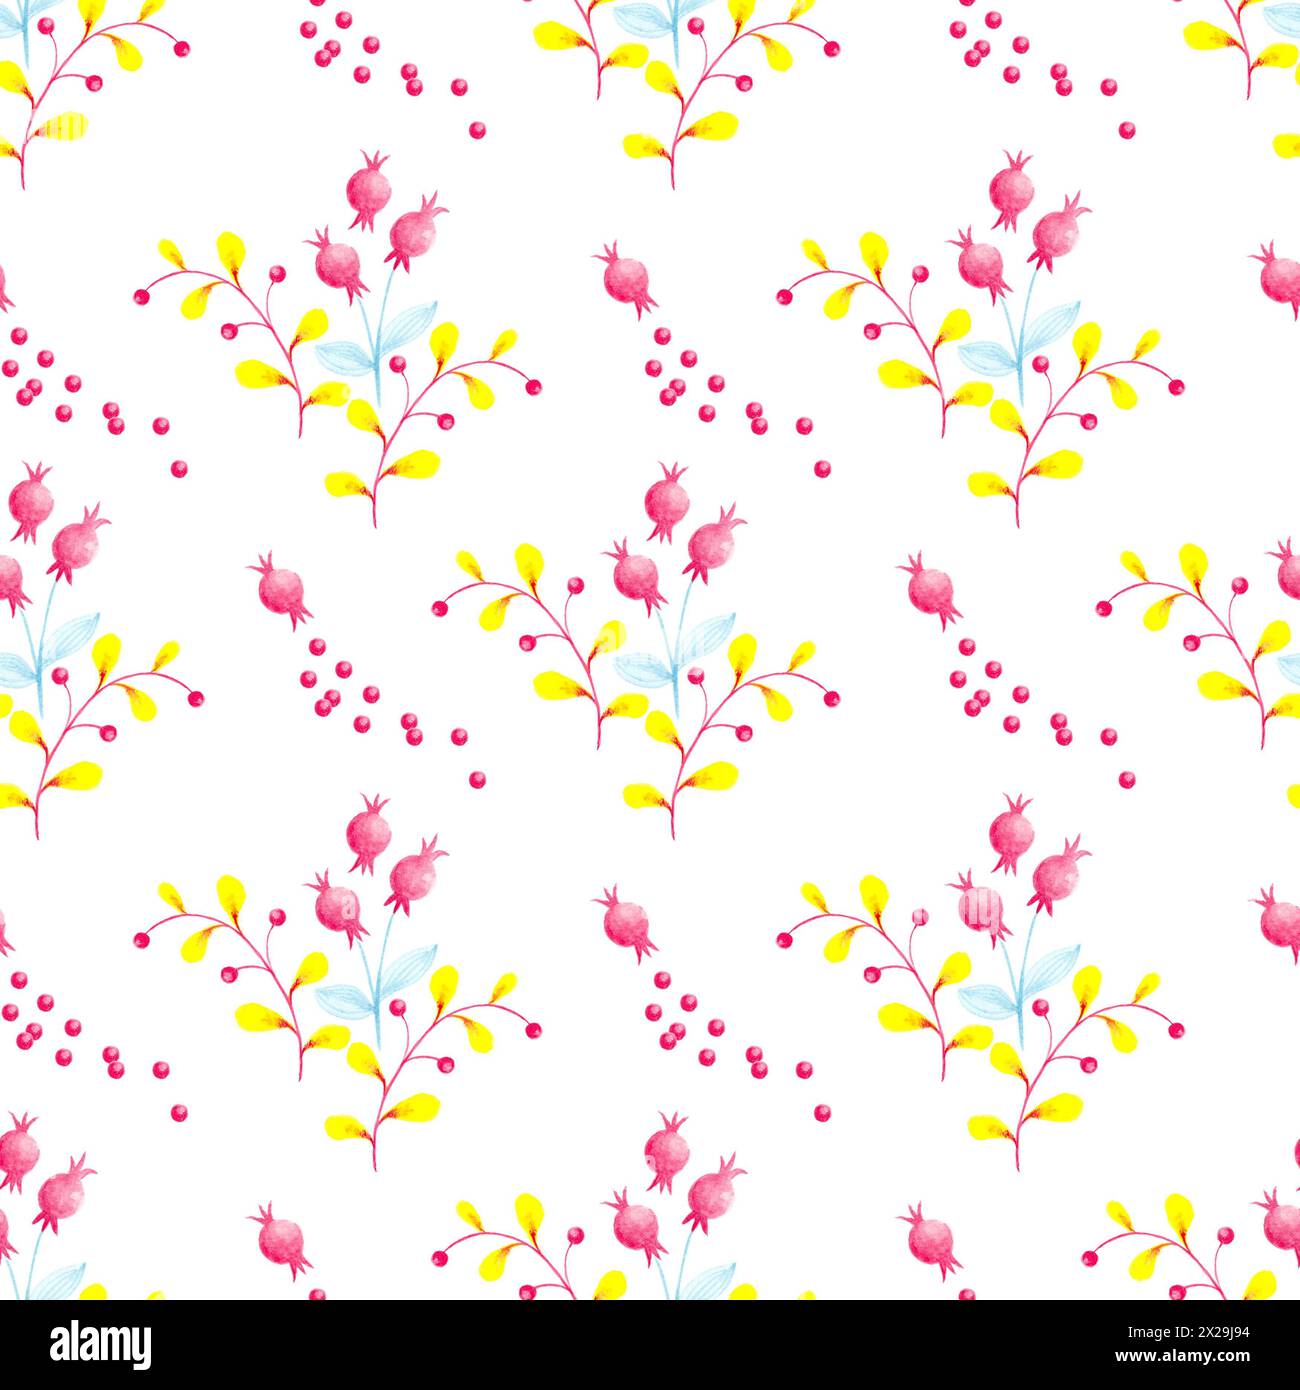 Illustrazione a motivi botanici senza cuciture con rami e fiori gialli su sfondo bianco. Tema primavera ed estate. Foto Stock